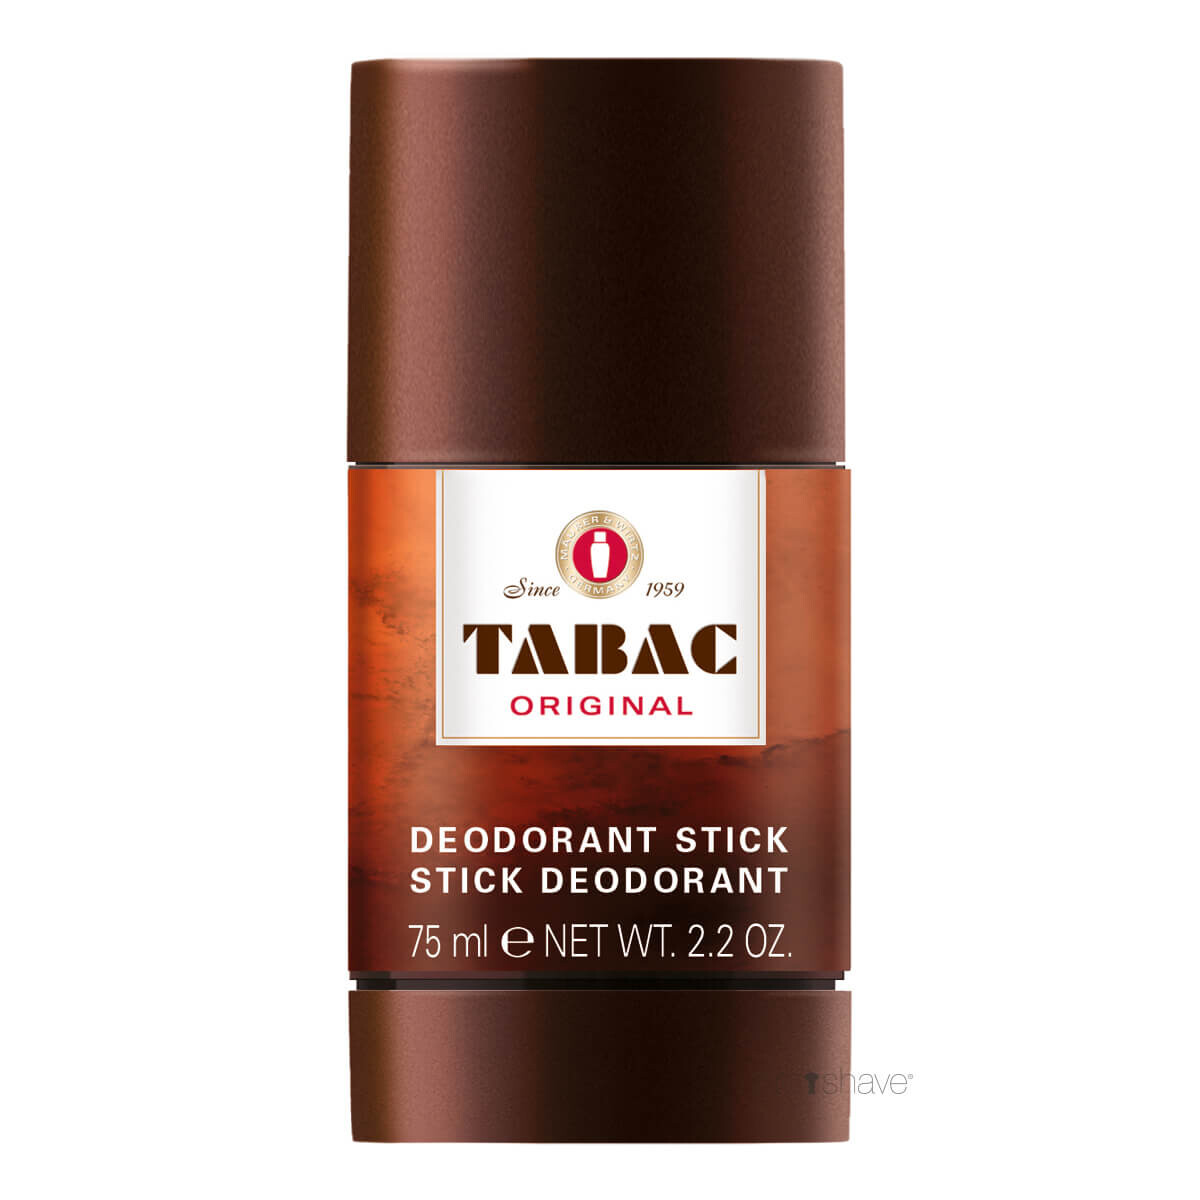 Billede af Tabac Deodorant Stick, 75 ml.